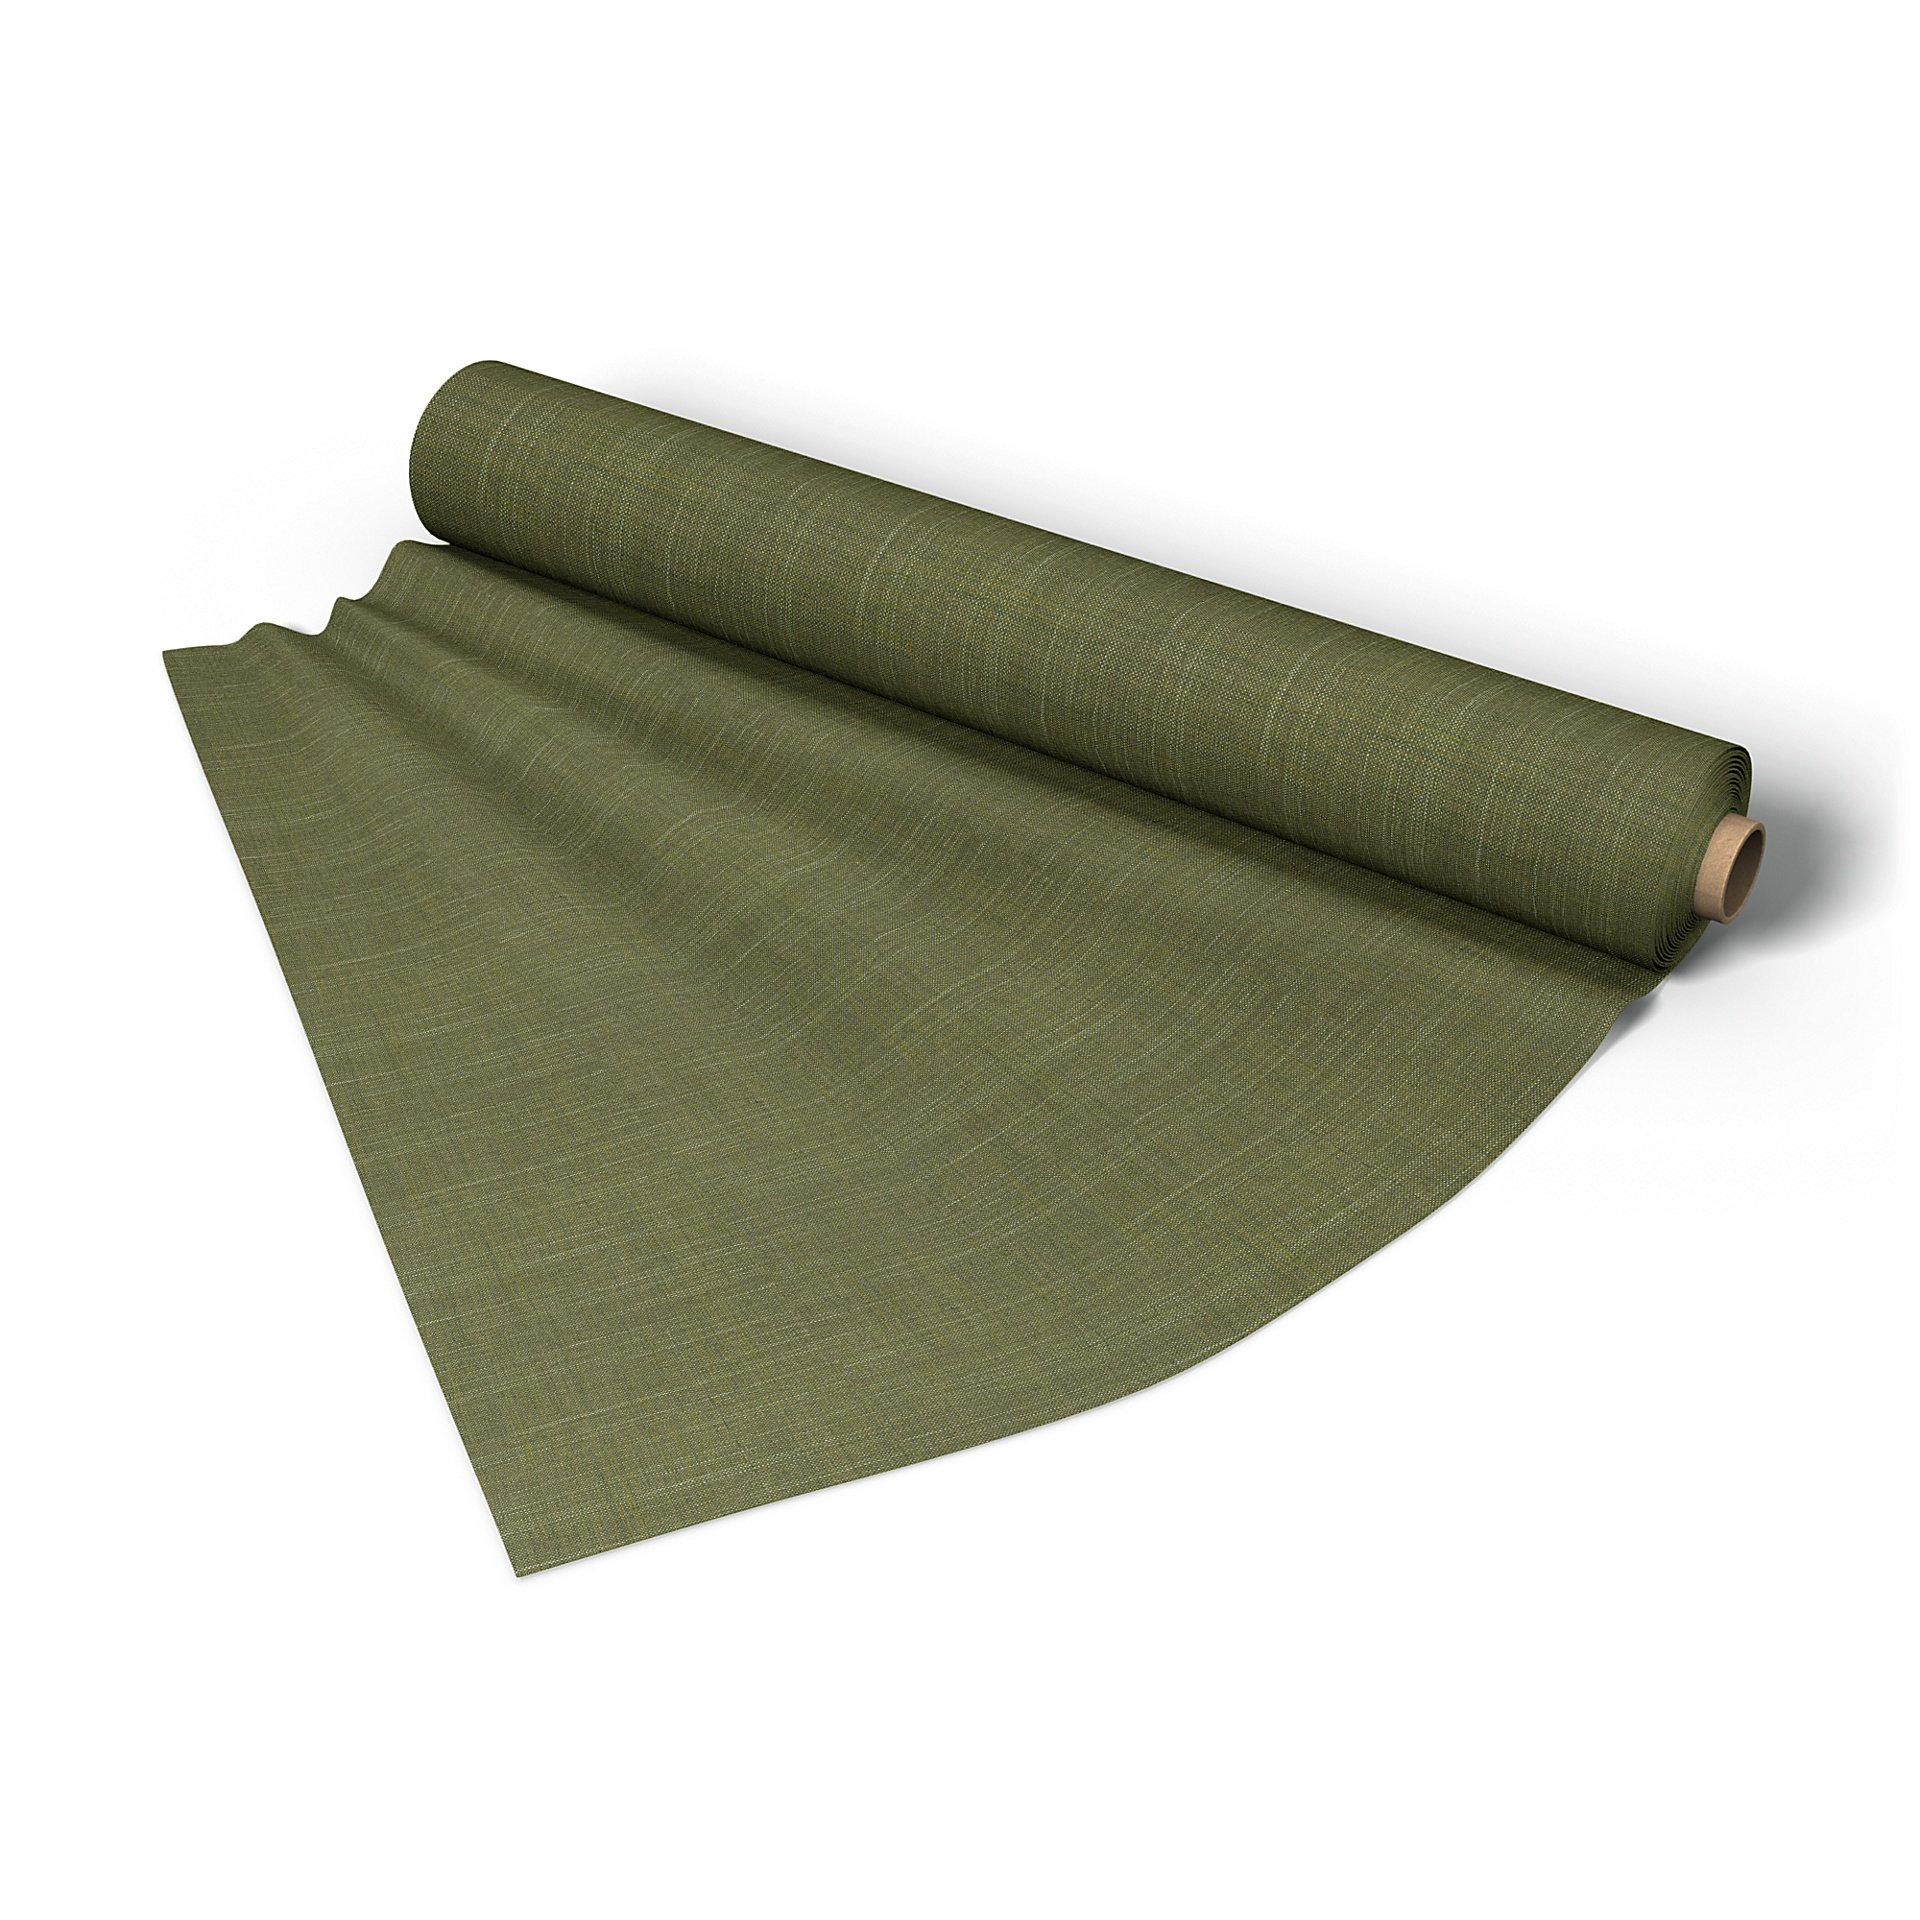 Fabric per metre, Moss Green, Boucle & Texture - Bemz